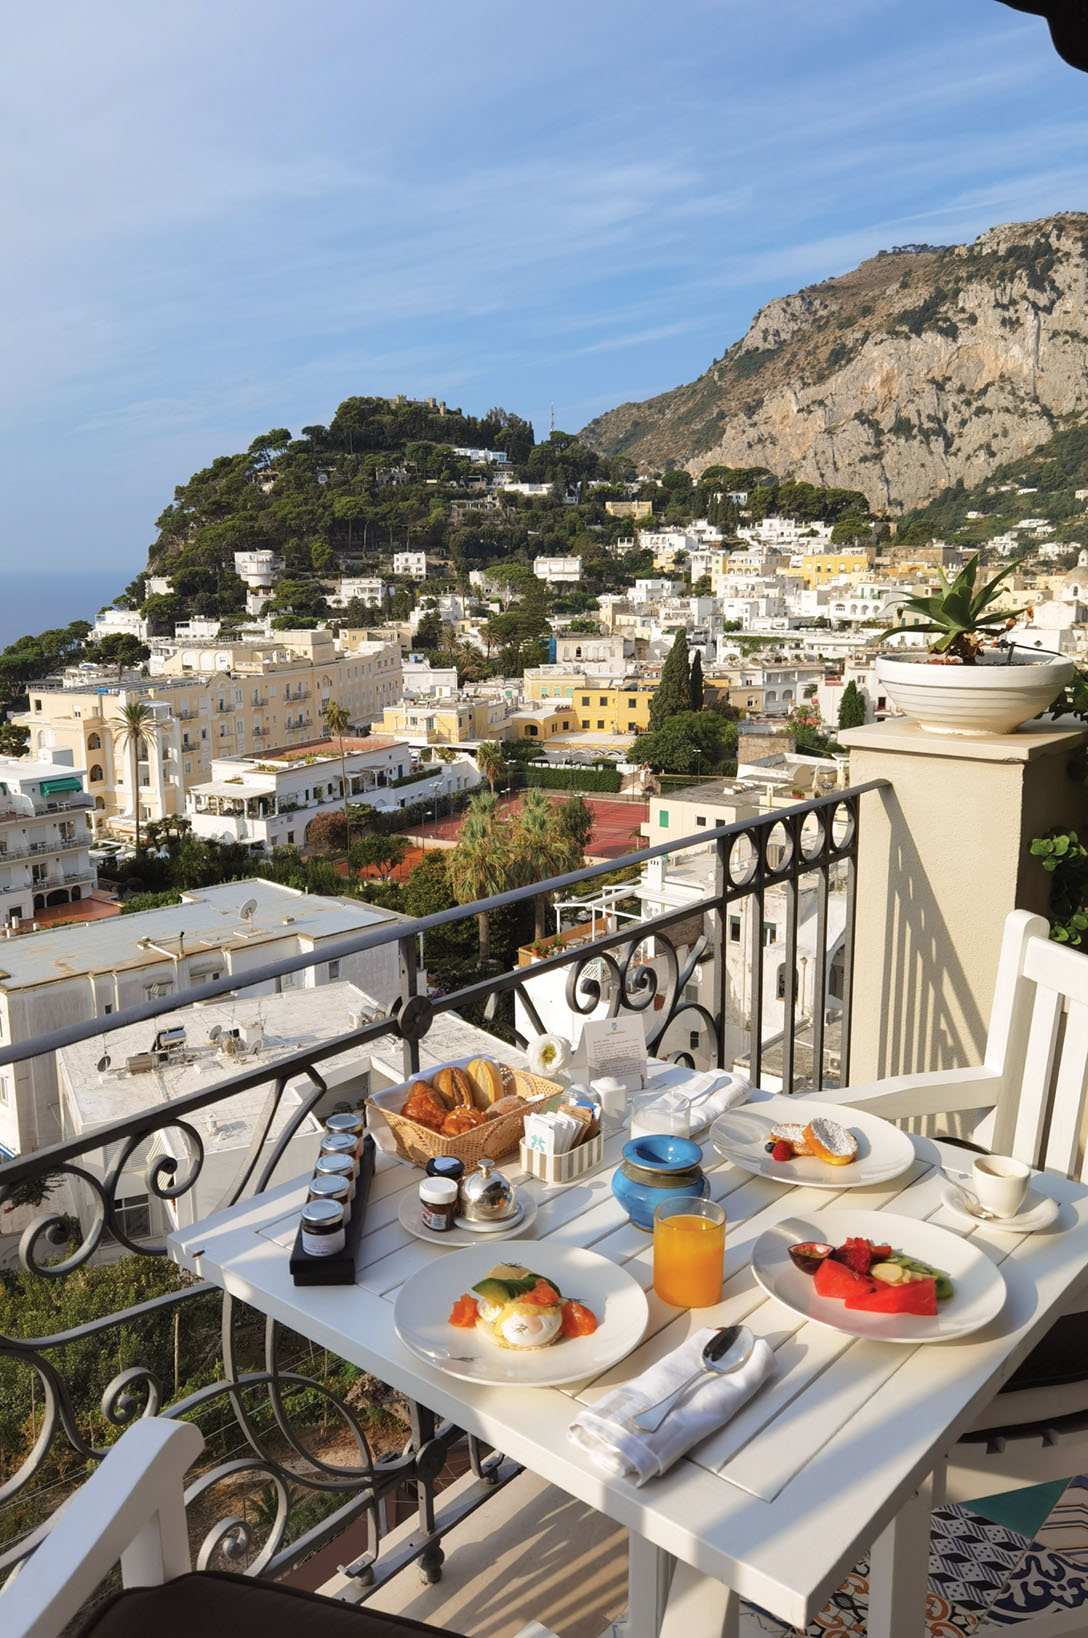 Amalfi Coast, vista from balcony of Tiberio Palace hotel